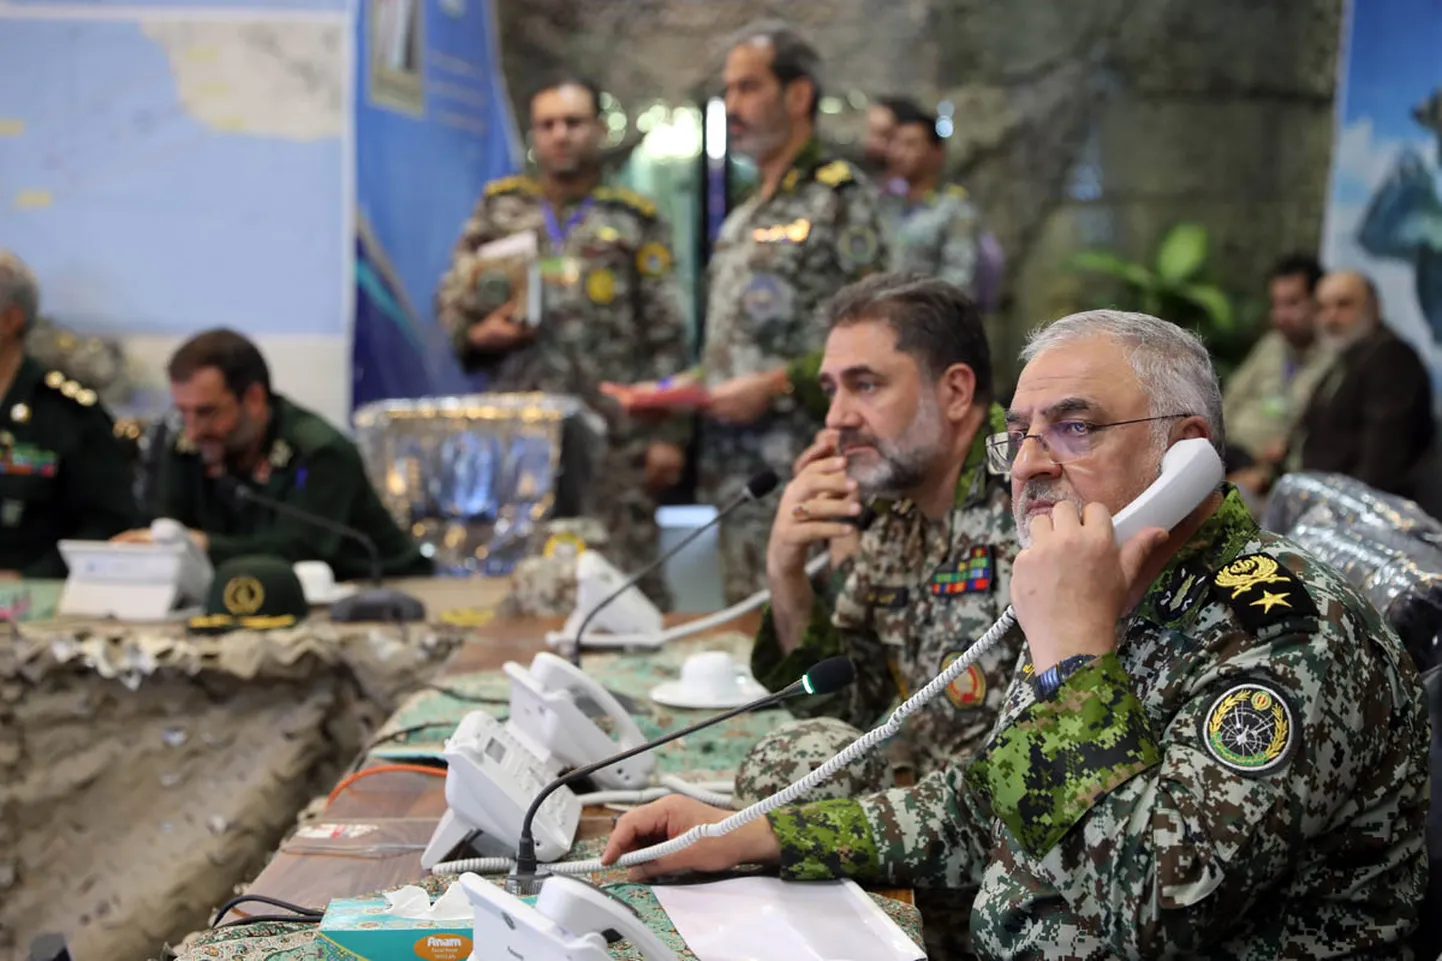 Iraani komandörid sõjaväeõppusel. Foto on illustratiivne.